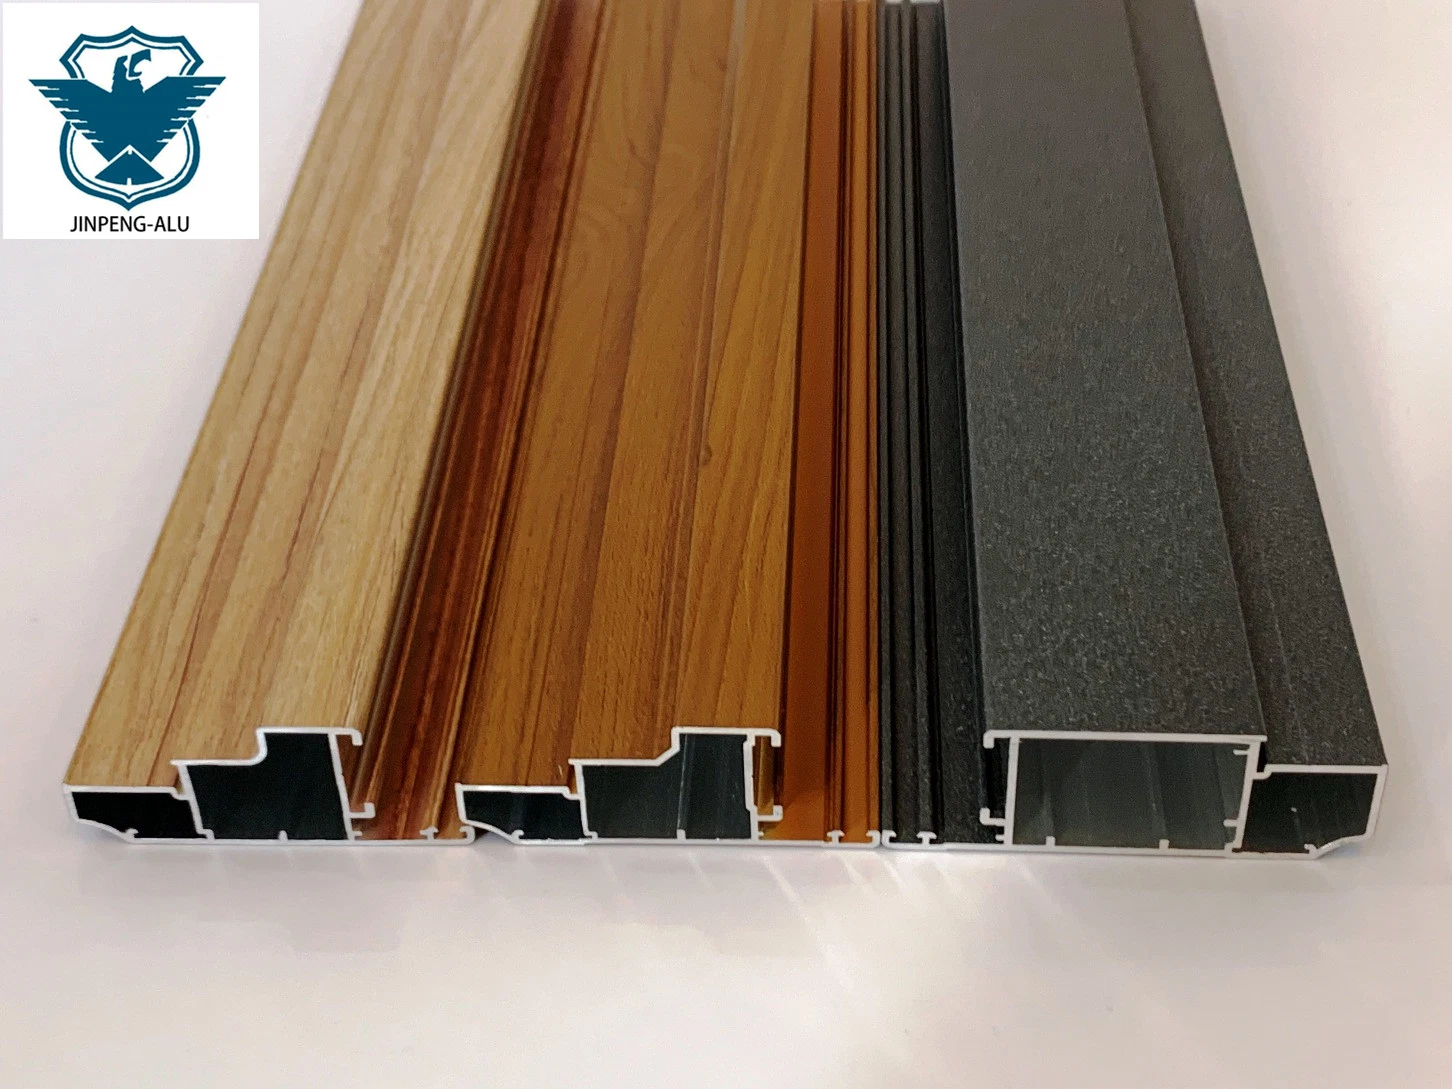 Aluminium Profile Wood Like Surface Finishing-China OEM Factory Supplier